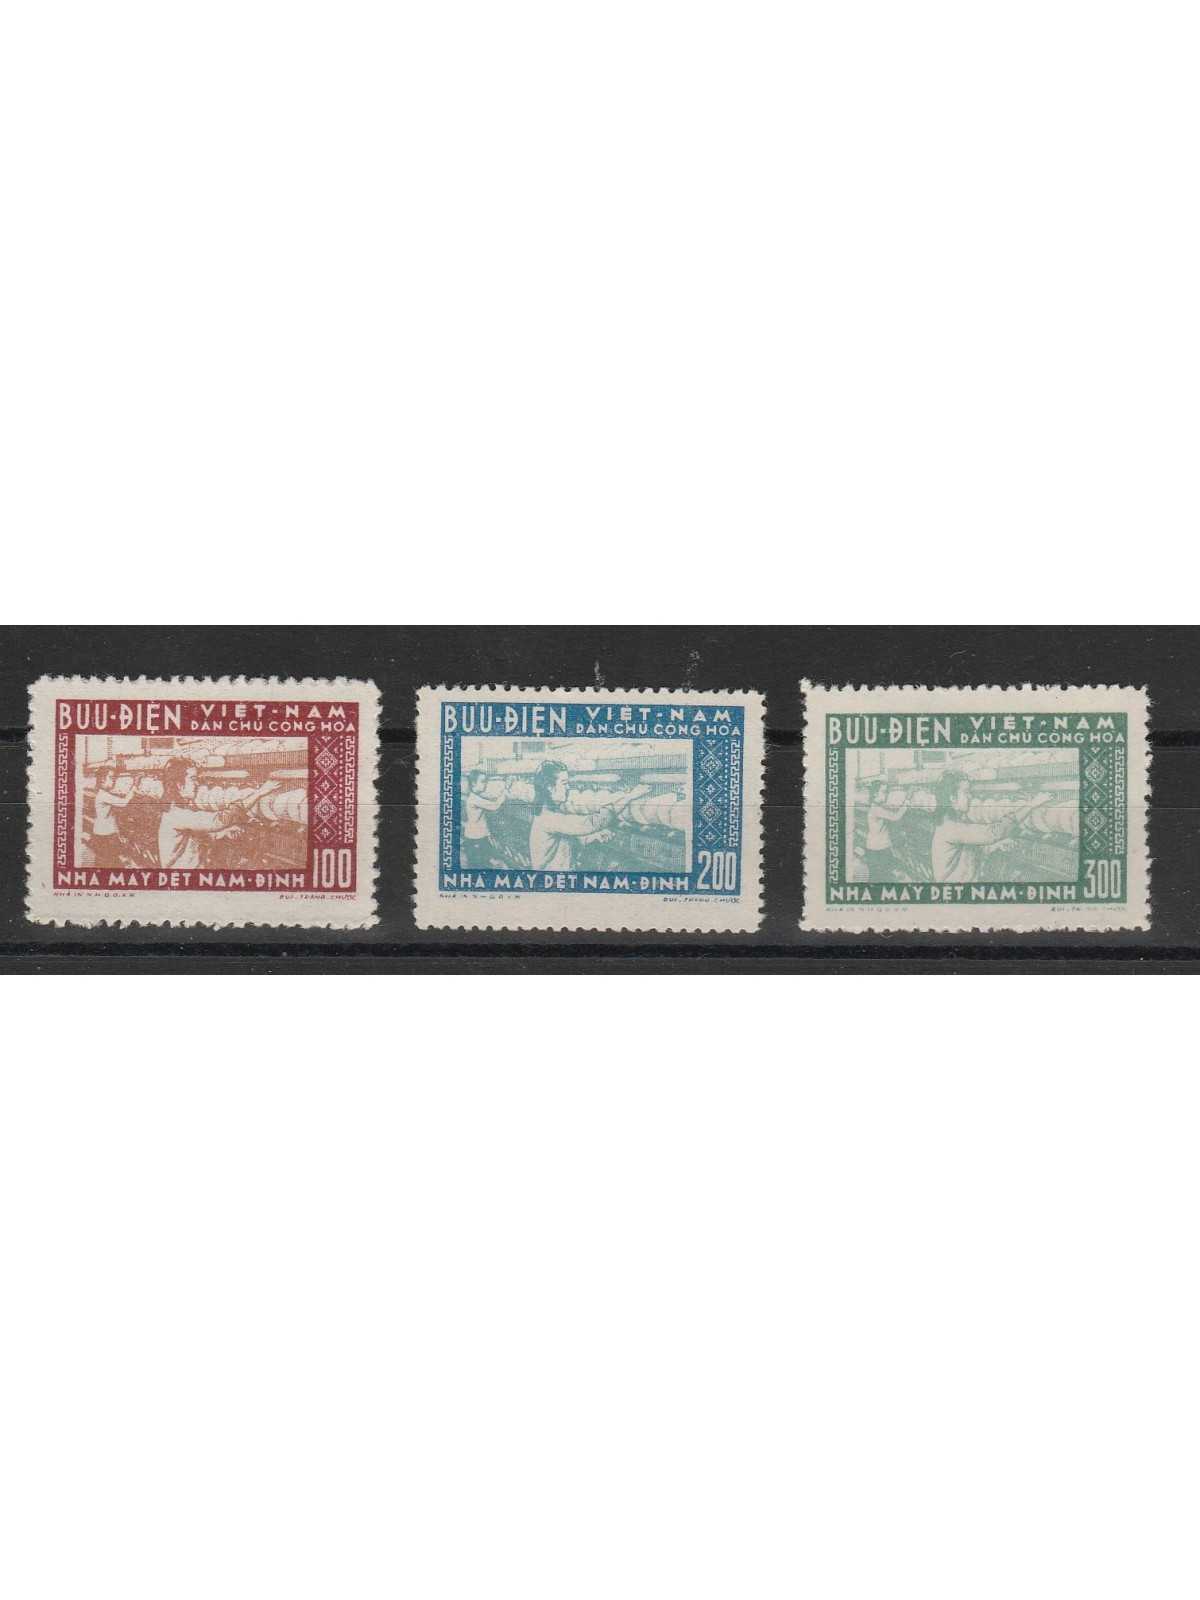 1957 VIETNAM FILATURA DINAM-DINH 3 VAL MLH SG MF51010